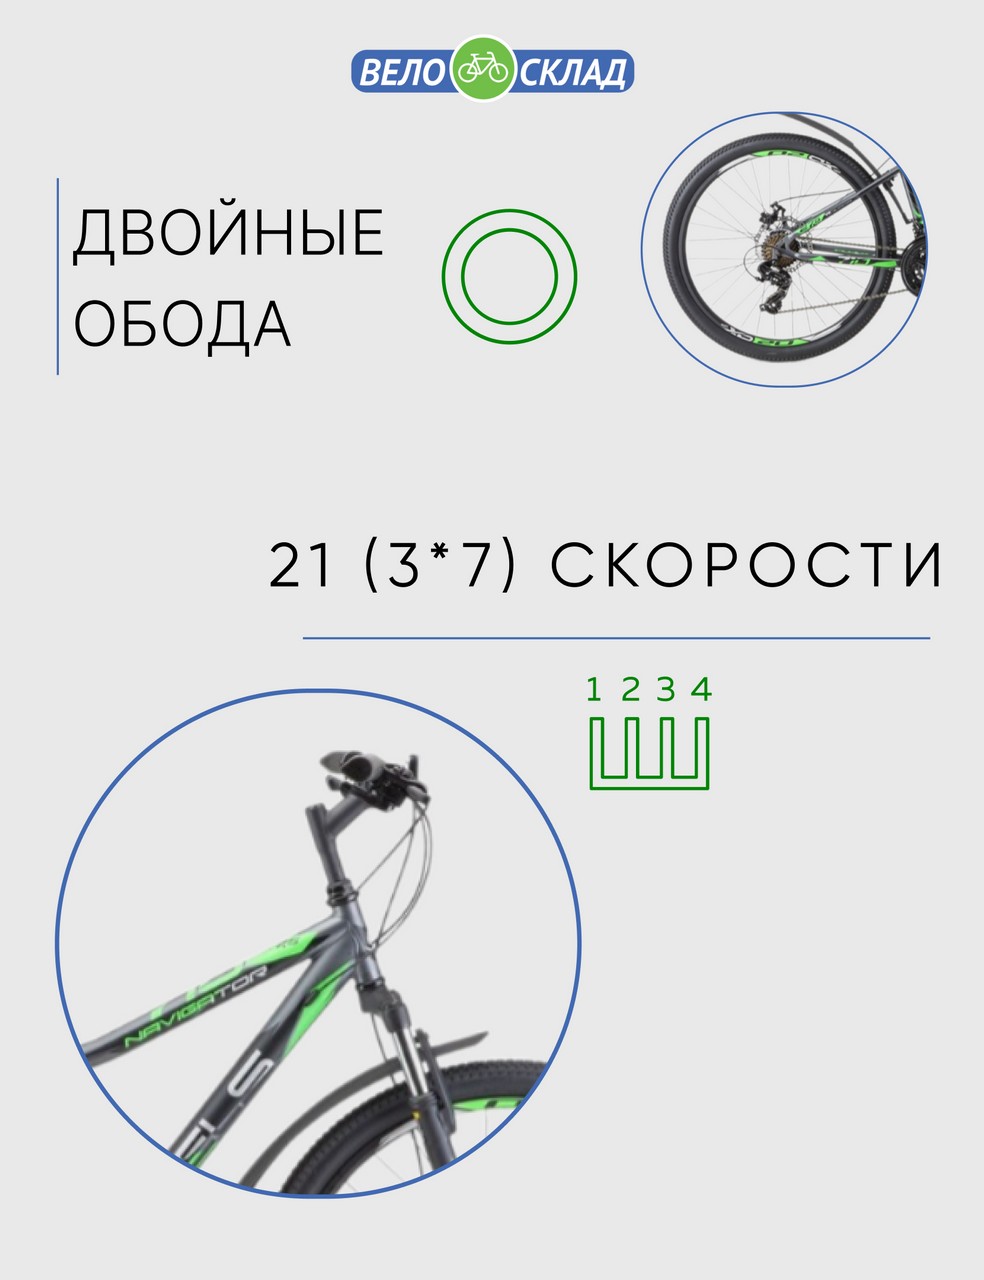 Горный велосипед Stels Navigator 710 MD 27.5 V020, год 2023, цвет Серебристый-Зеленый, ростовка 16